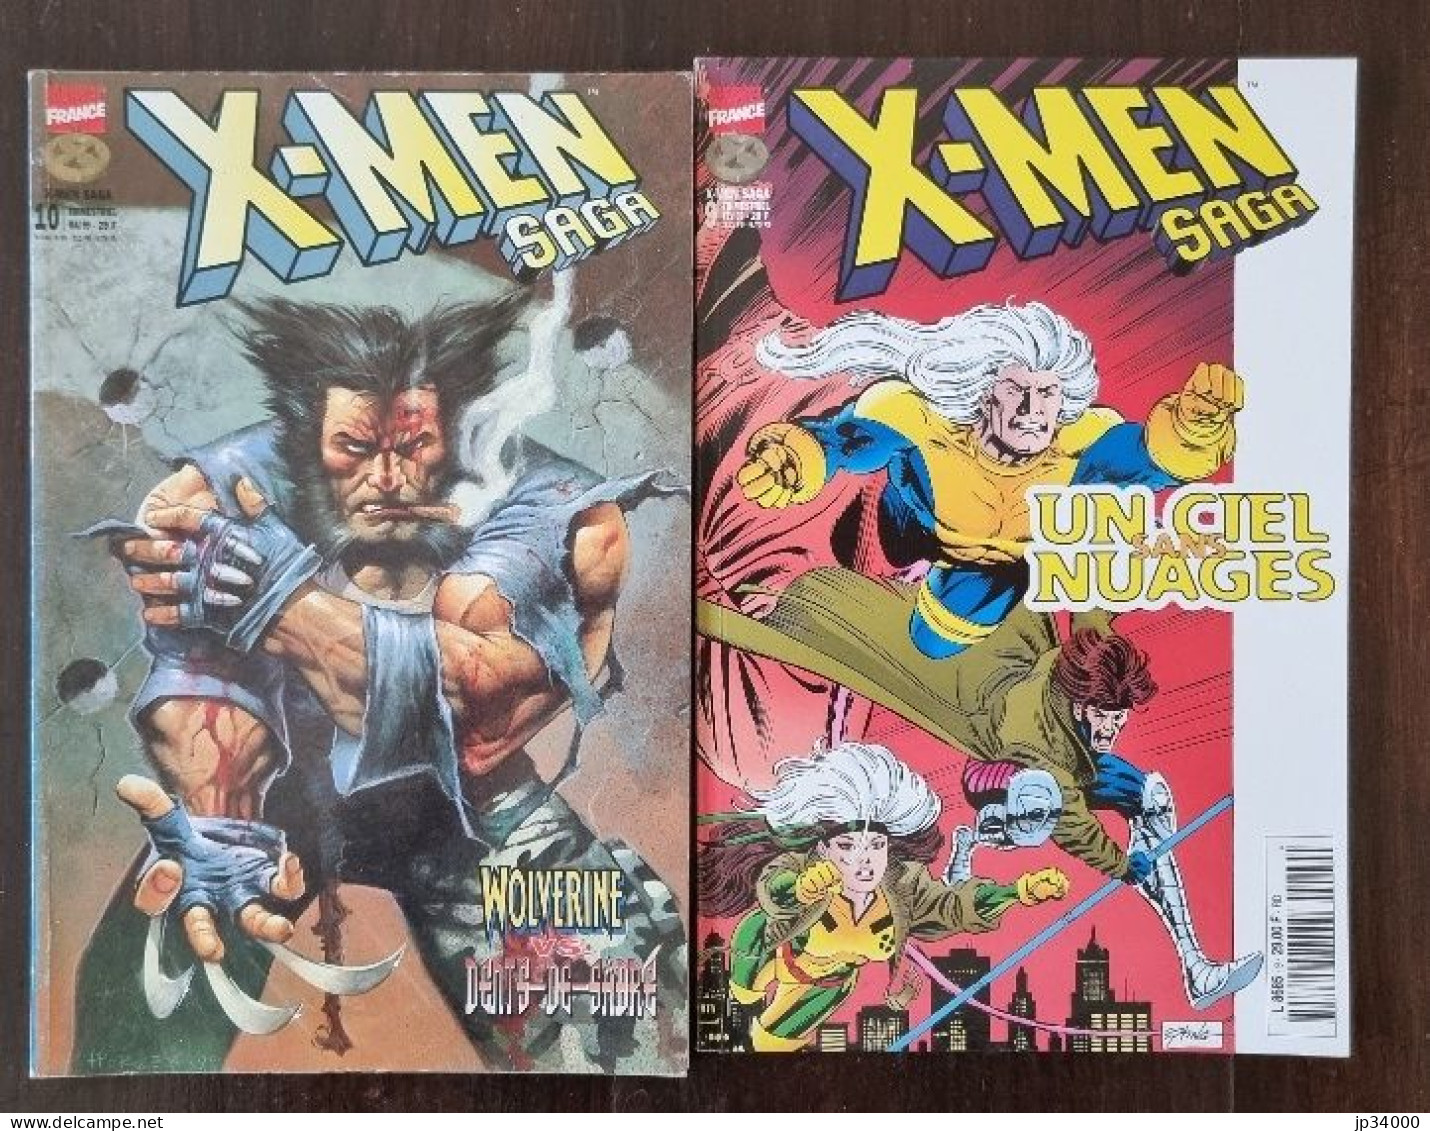 X-Men Saga N° 9+10. Marvel. Panini Comics. (1999) Lot De 2 Différents - XMen